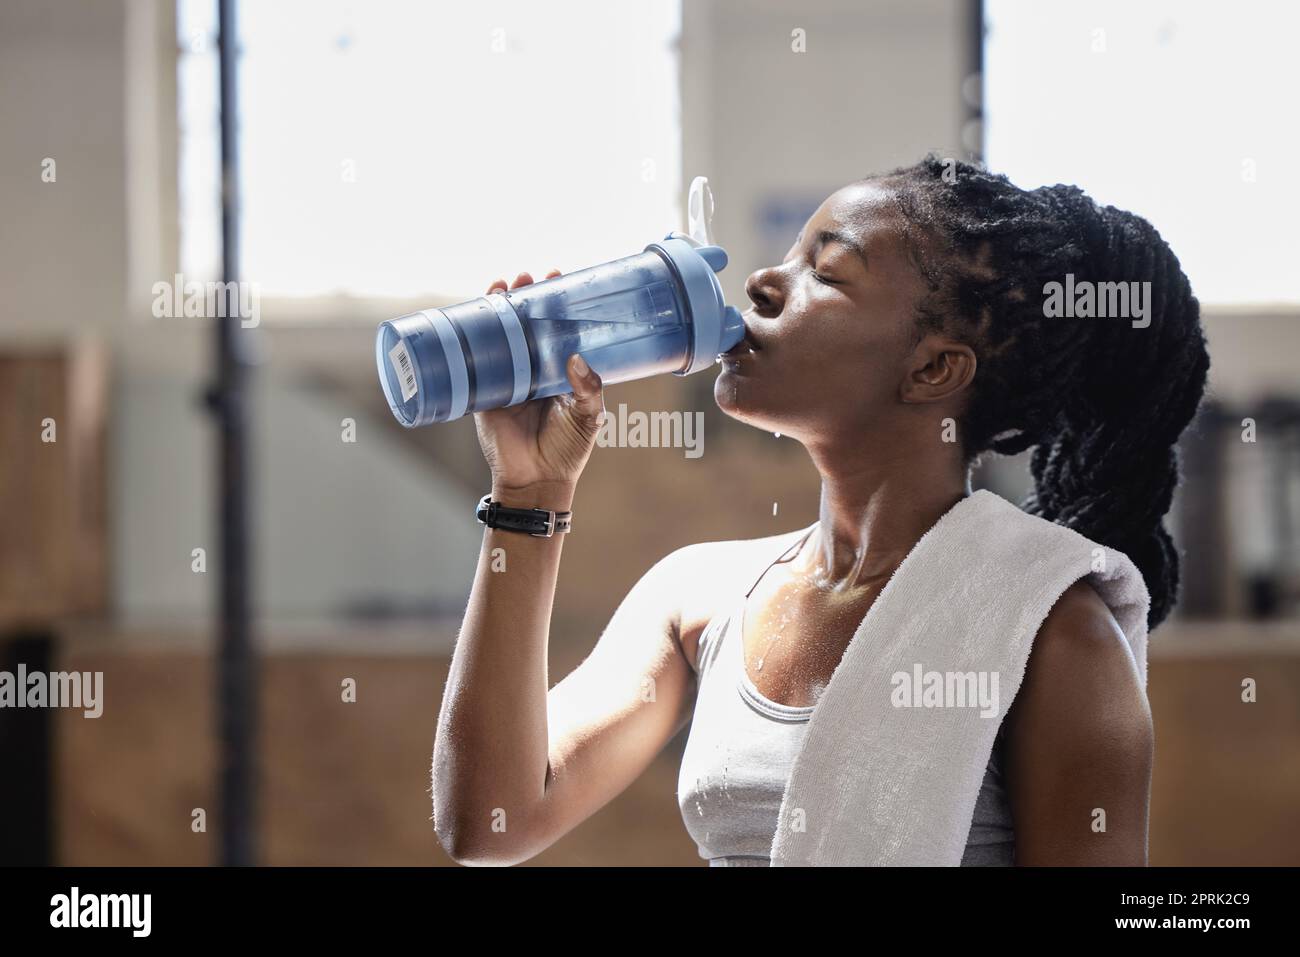 Bere acqua e rilassarsi dopo una sessione di fitness, allenamento e allenamento di una donna atleta. Femmina dalla Nigeria con sudore fatto raggiungere obiettivo di sport cardio obiettivo in una palestra di salute, benessere e sport Foto Stock